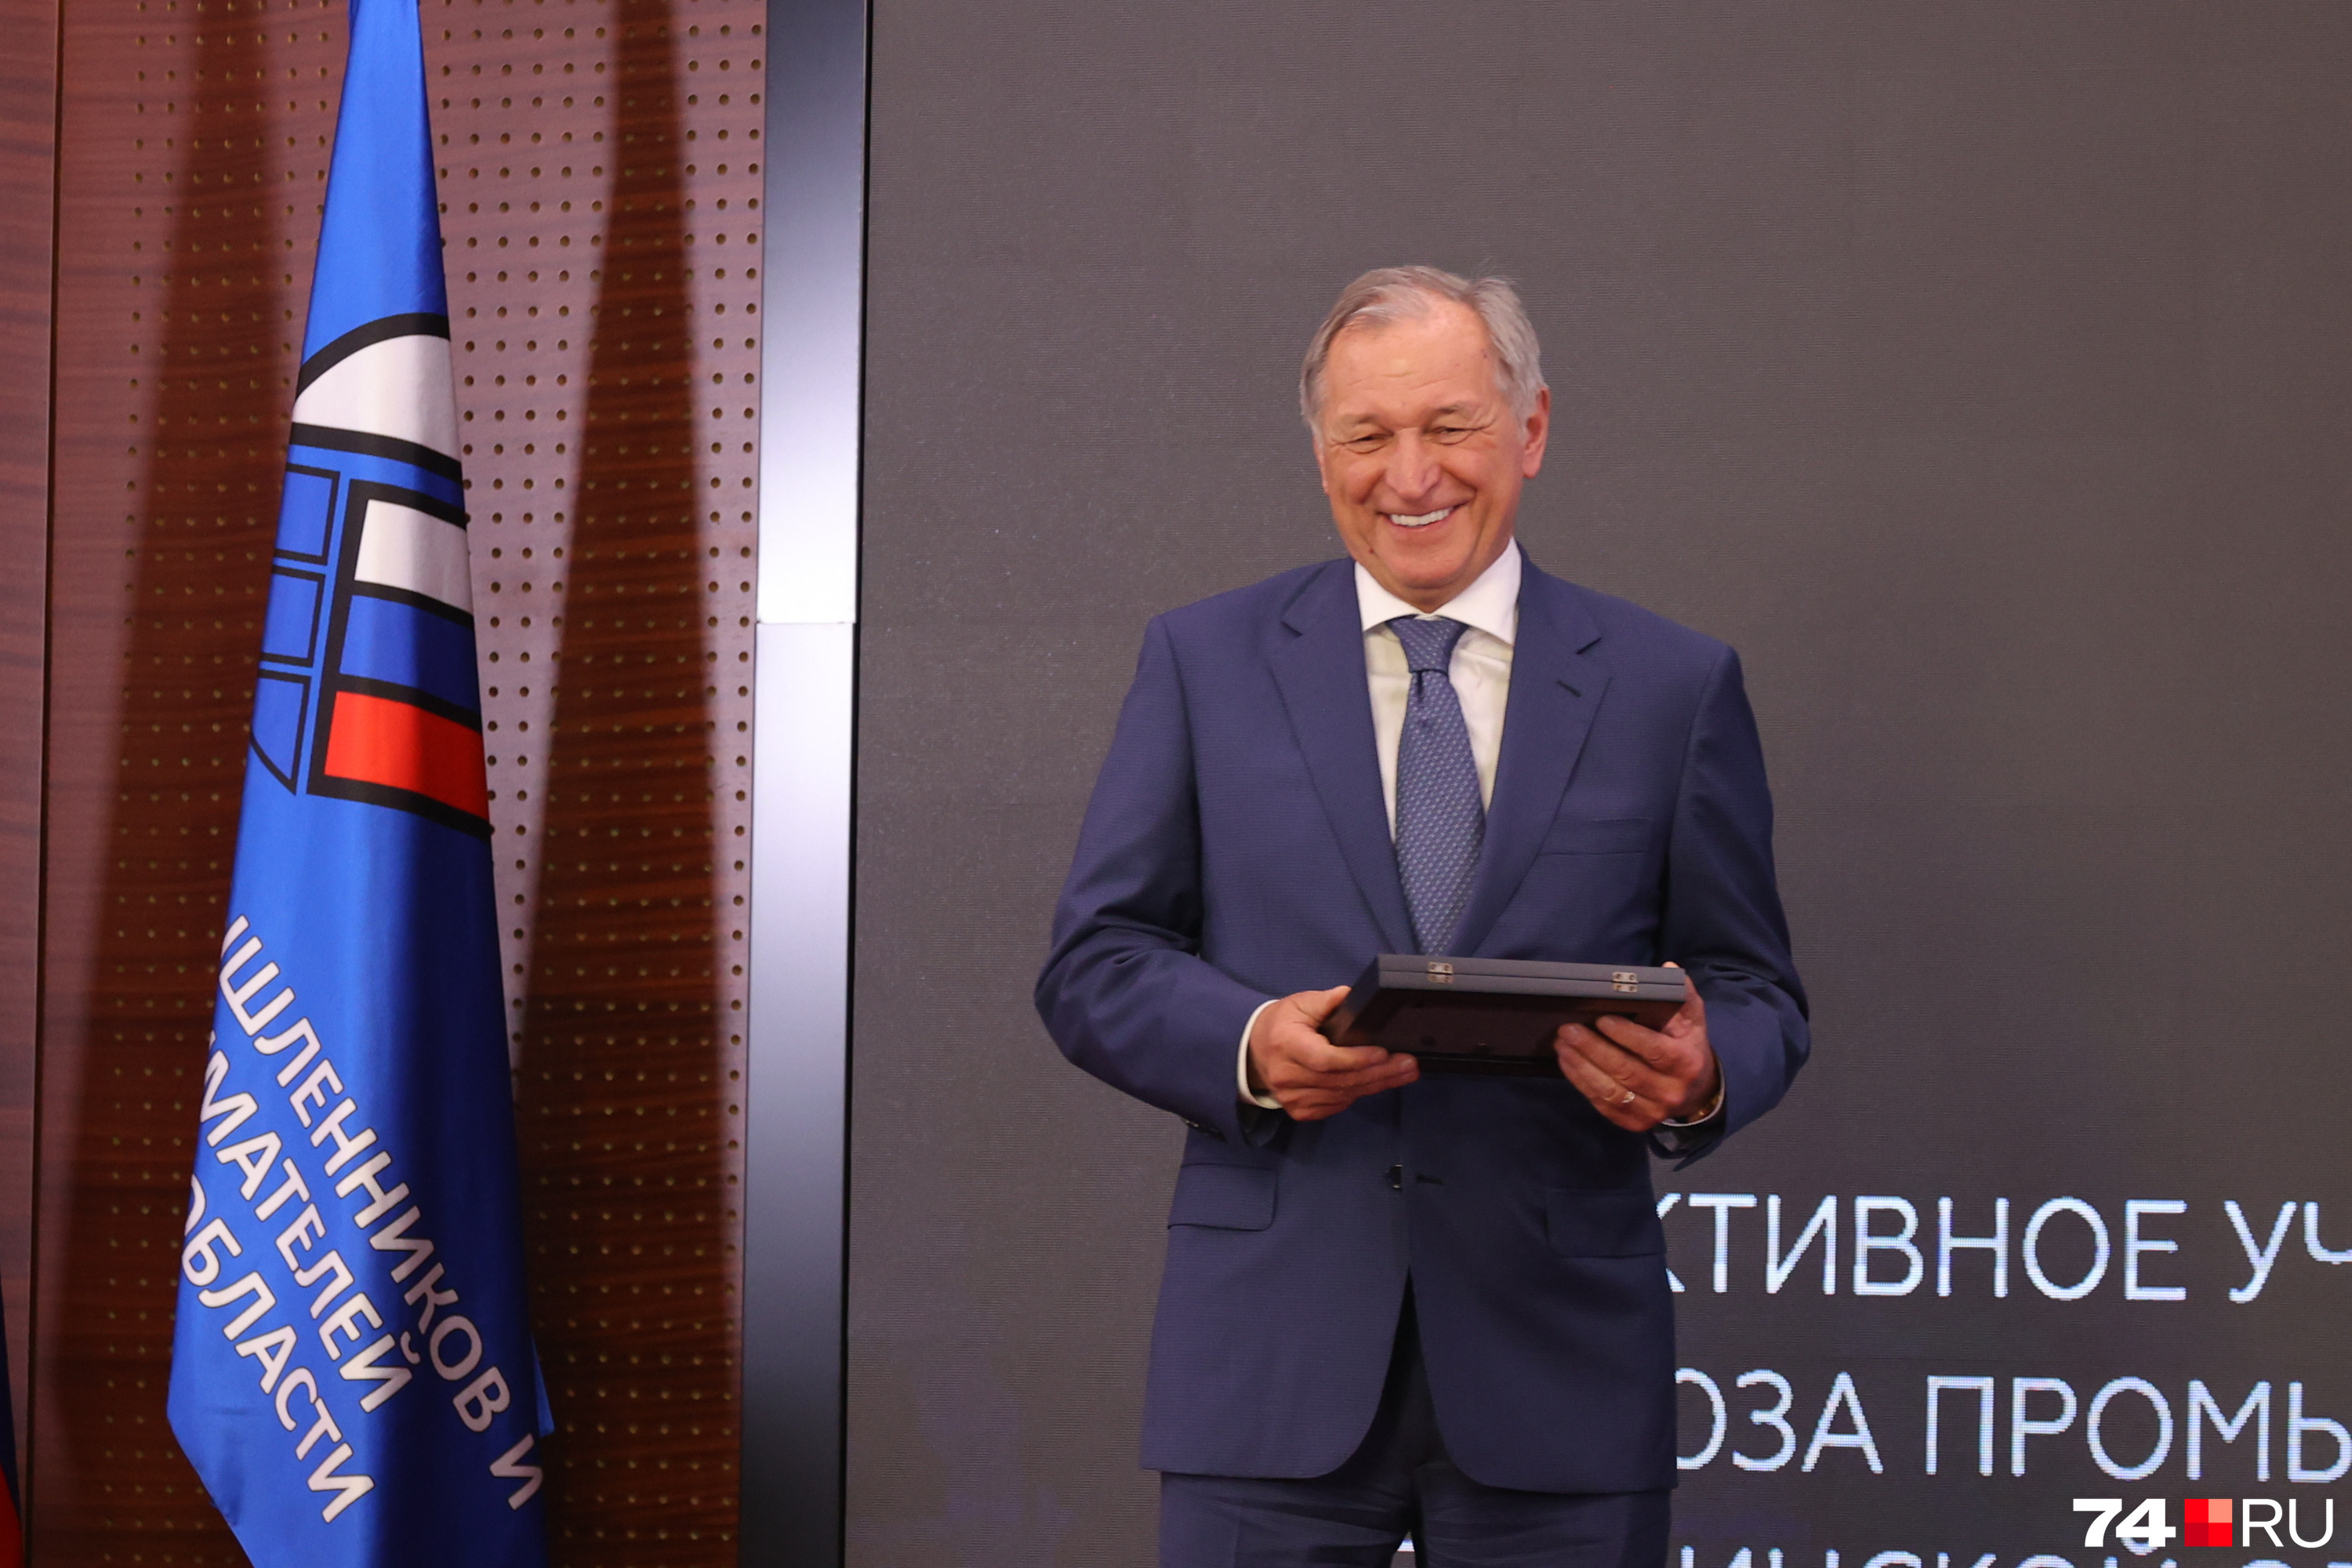 Президент УК «Южуралзолото Группа компаний» Константин Струков награждал коллег и сам получил диплом